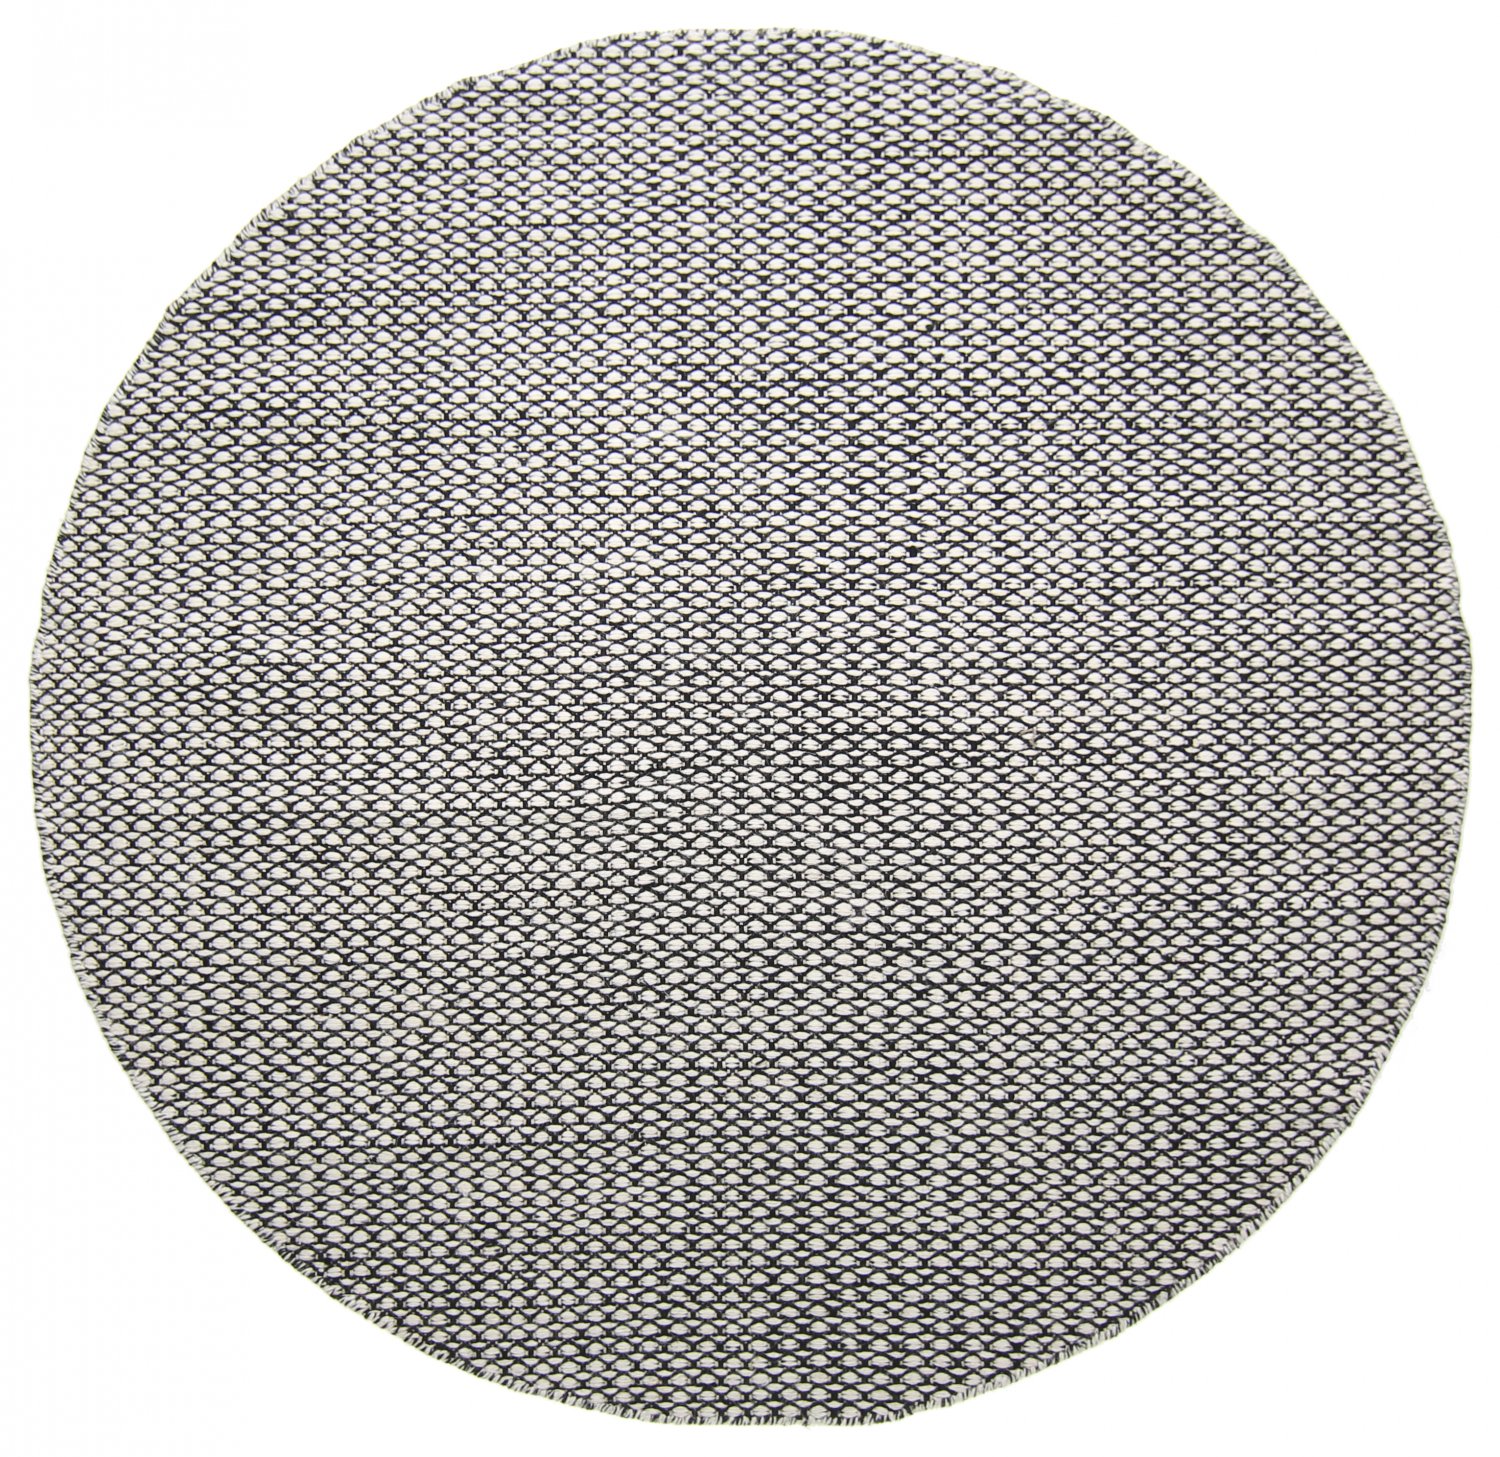 Pyöreä matot - Delly (musta/valkoinen)